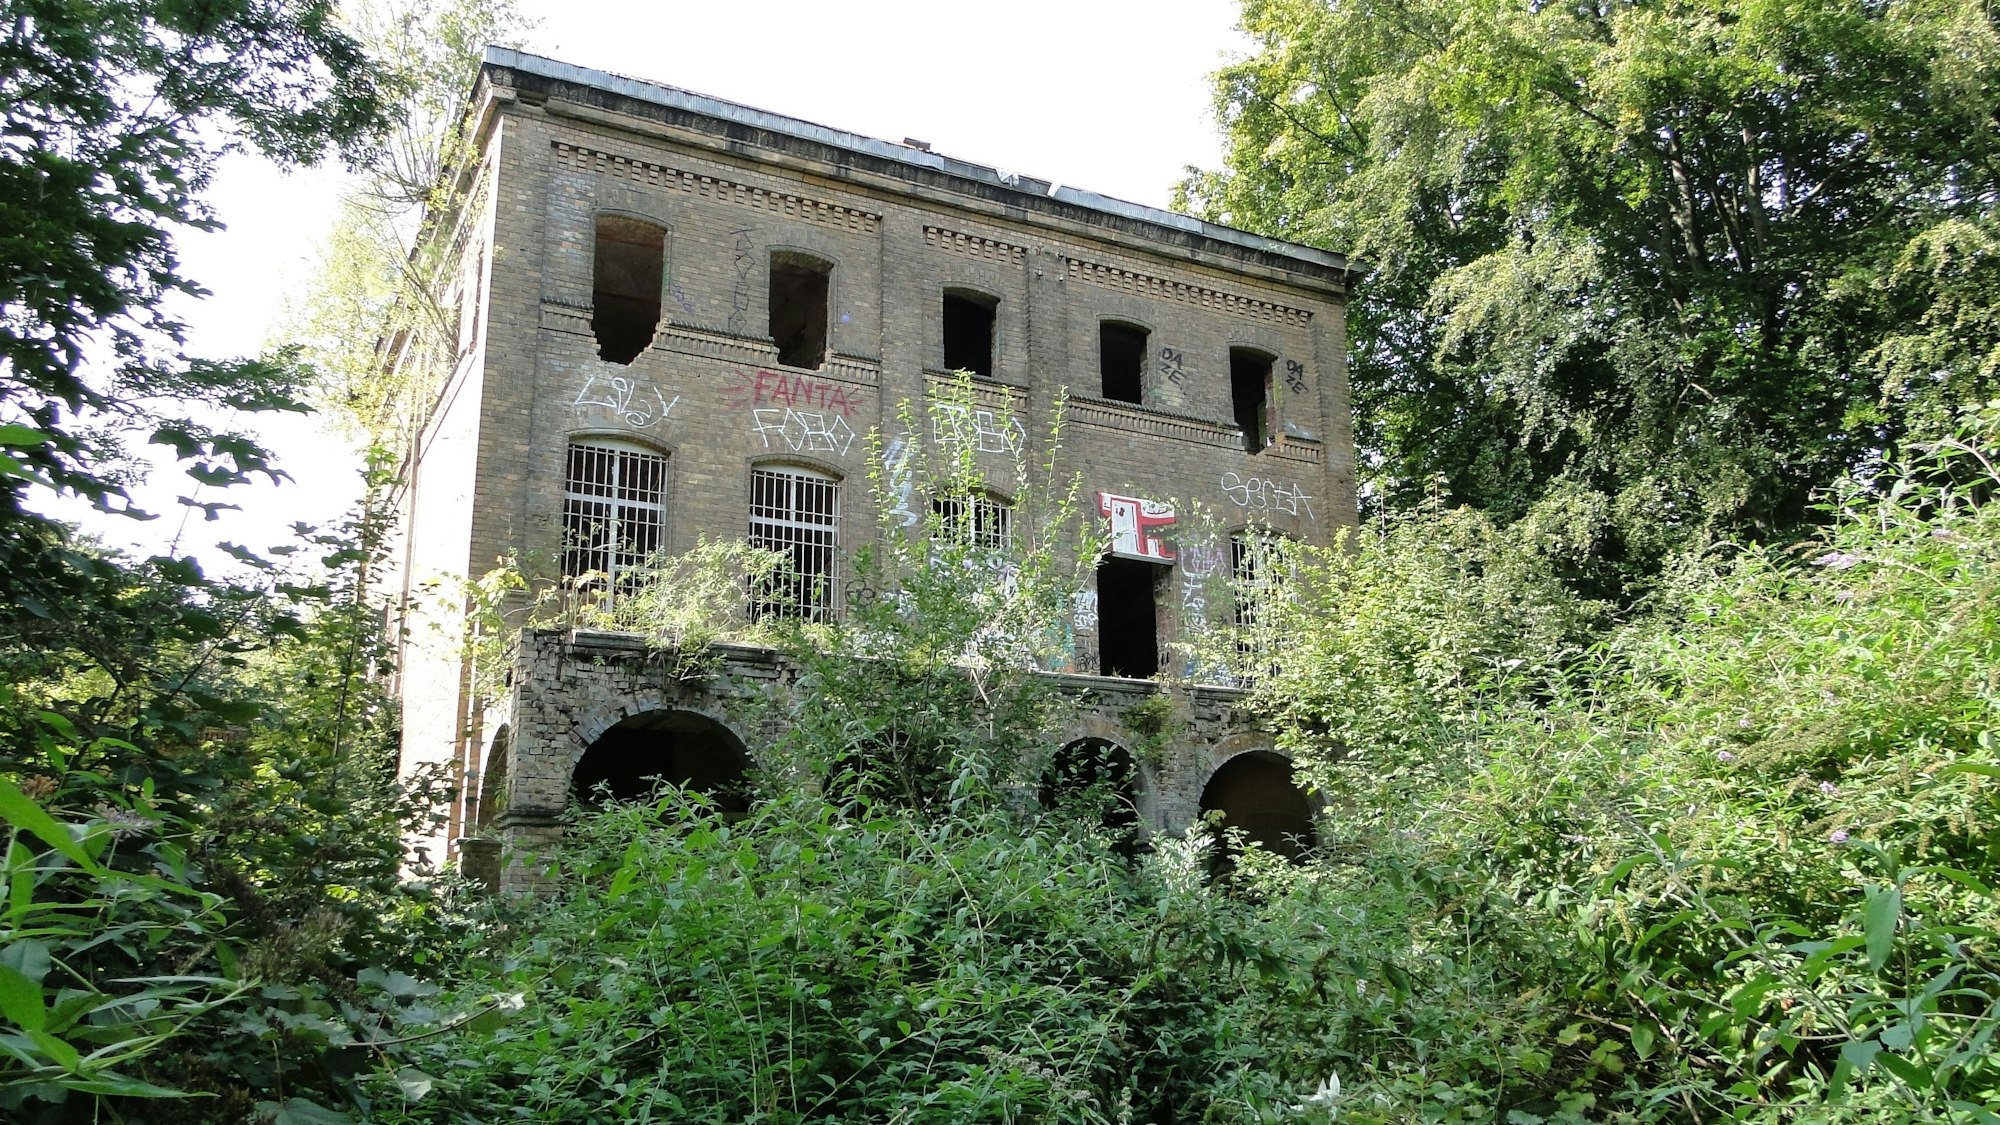 Inmitten von Bäumen und Gestrüpp steht die fensterscheibenlose Ruine einer alten Villa.